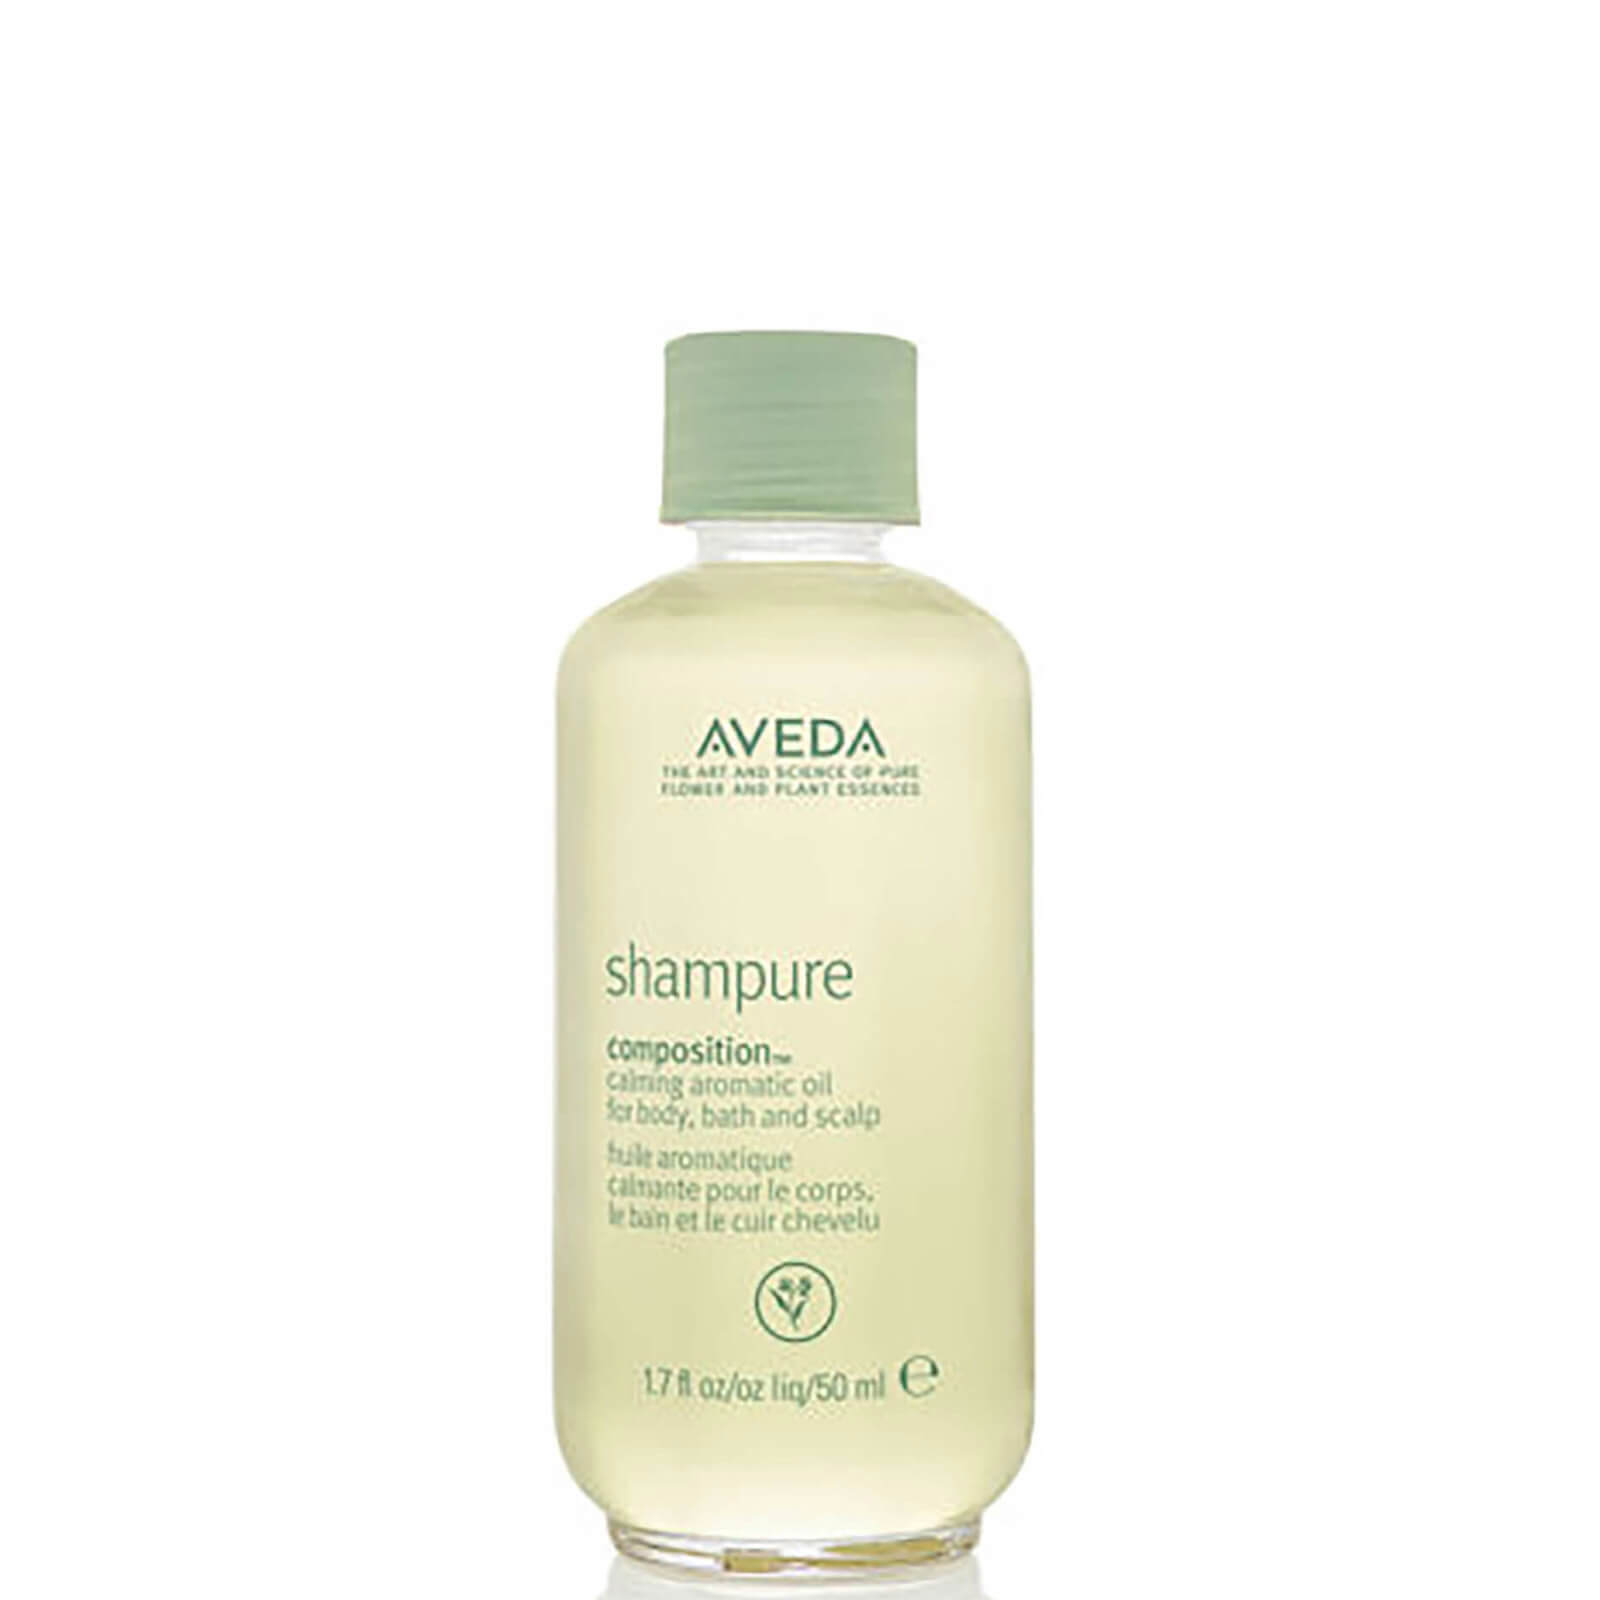 aveda - shampure composition oil â„¢